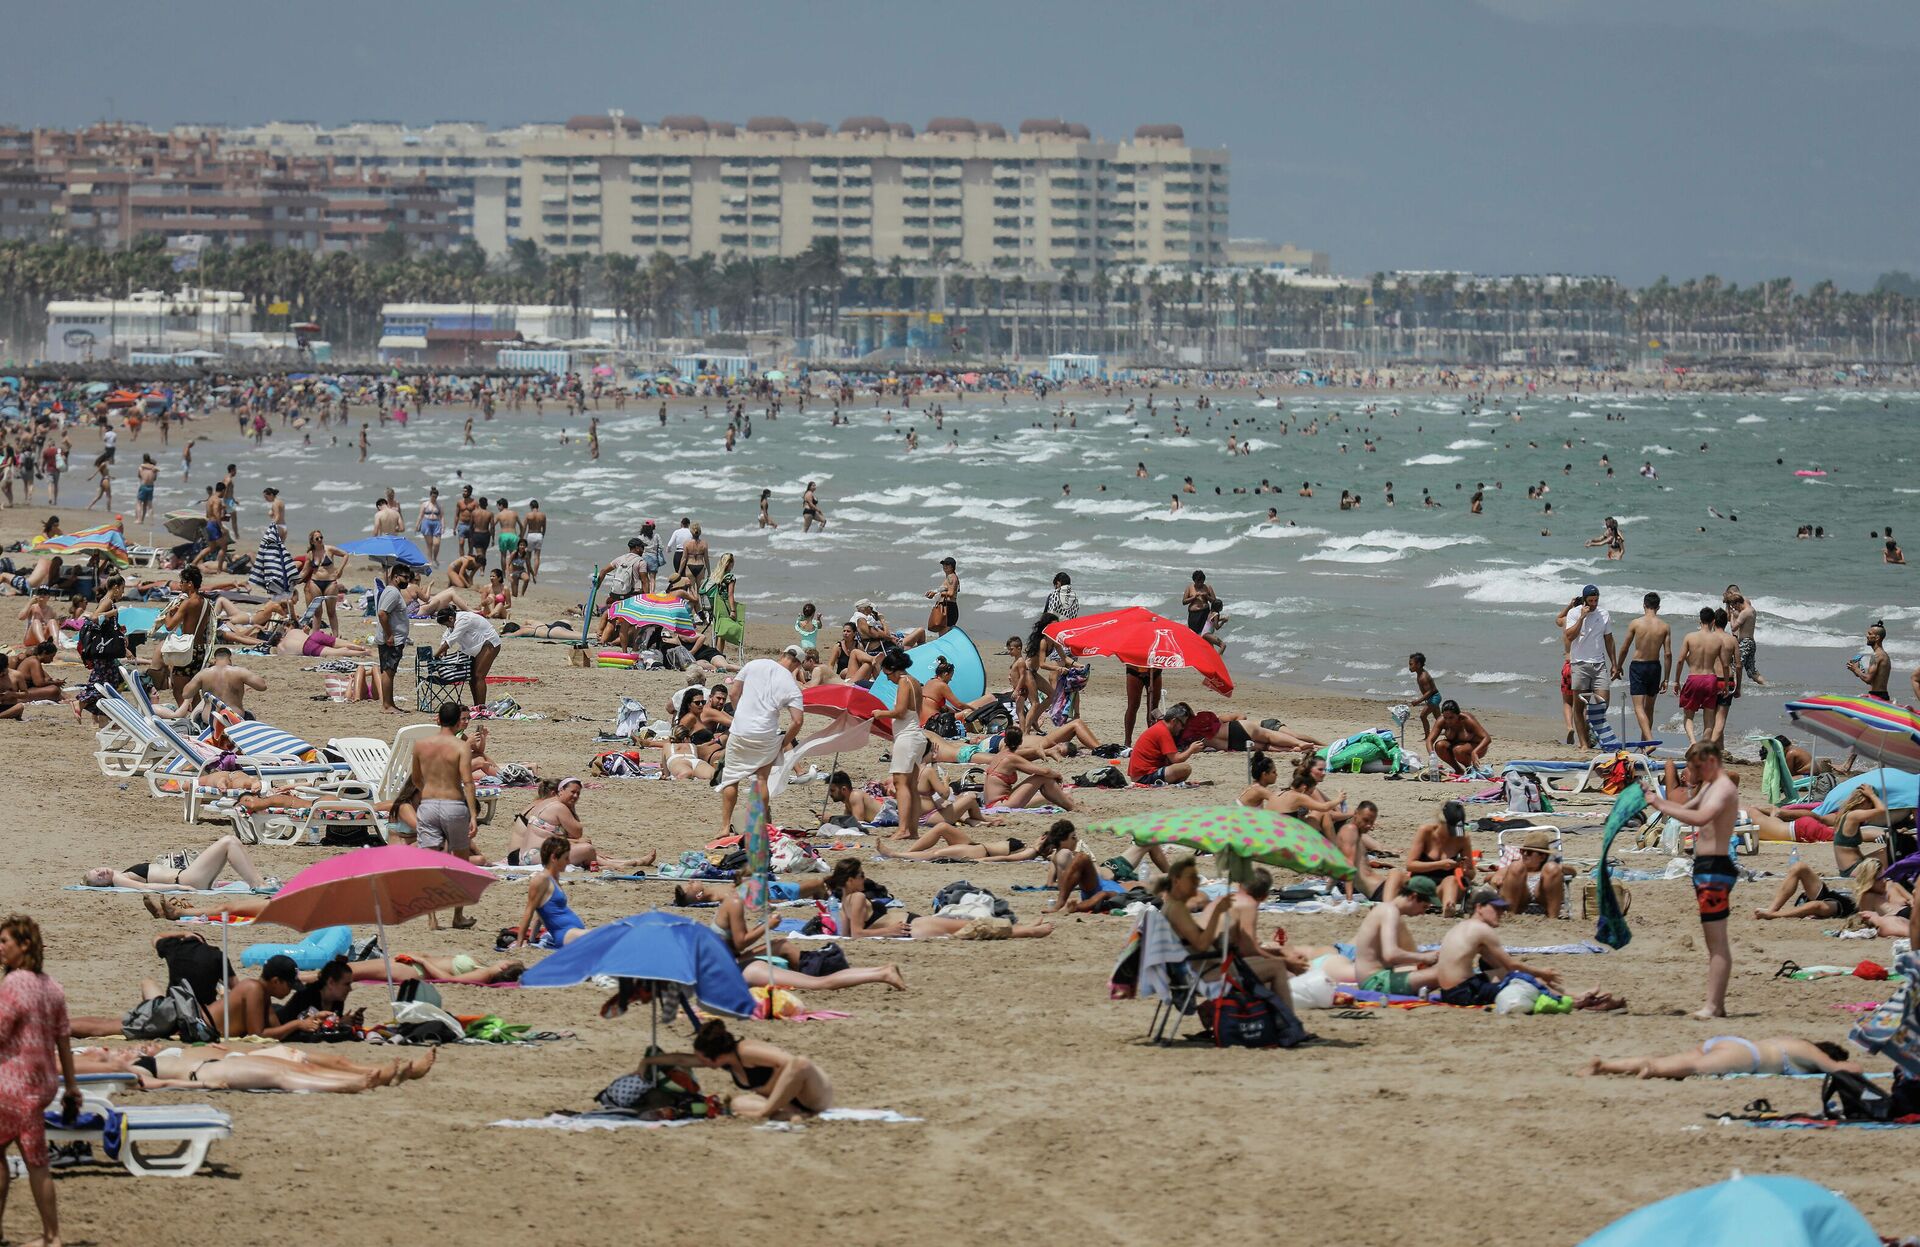 La Playa de la Malvarrosa repleta de gente en un día de alerta roja por altas temperaturas, a 12 de julio de 2021, en Valencia, Comunidad Valenciana (España).  - Sputnik Mundo, 1920, 26.07.2021